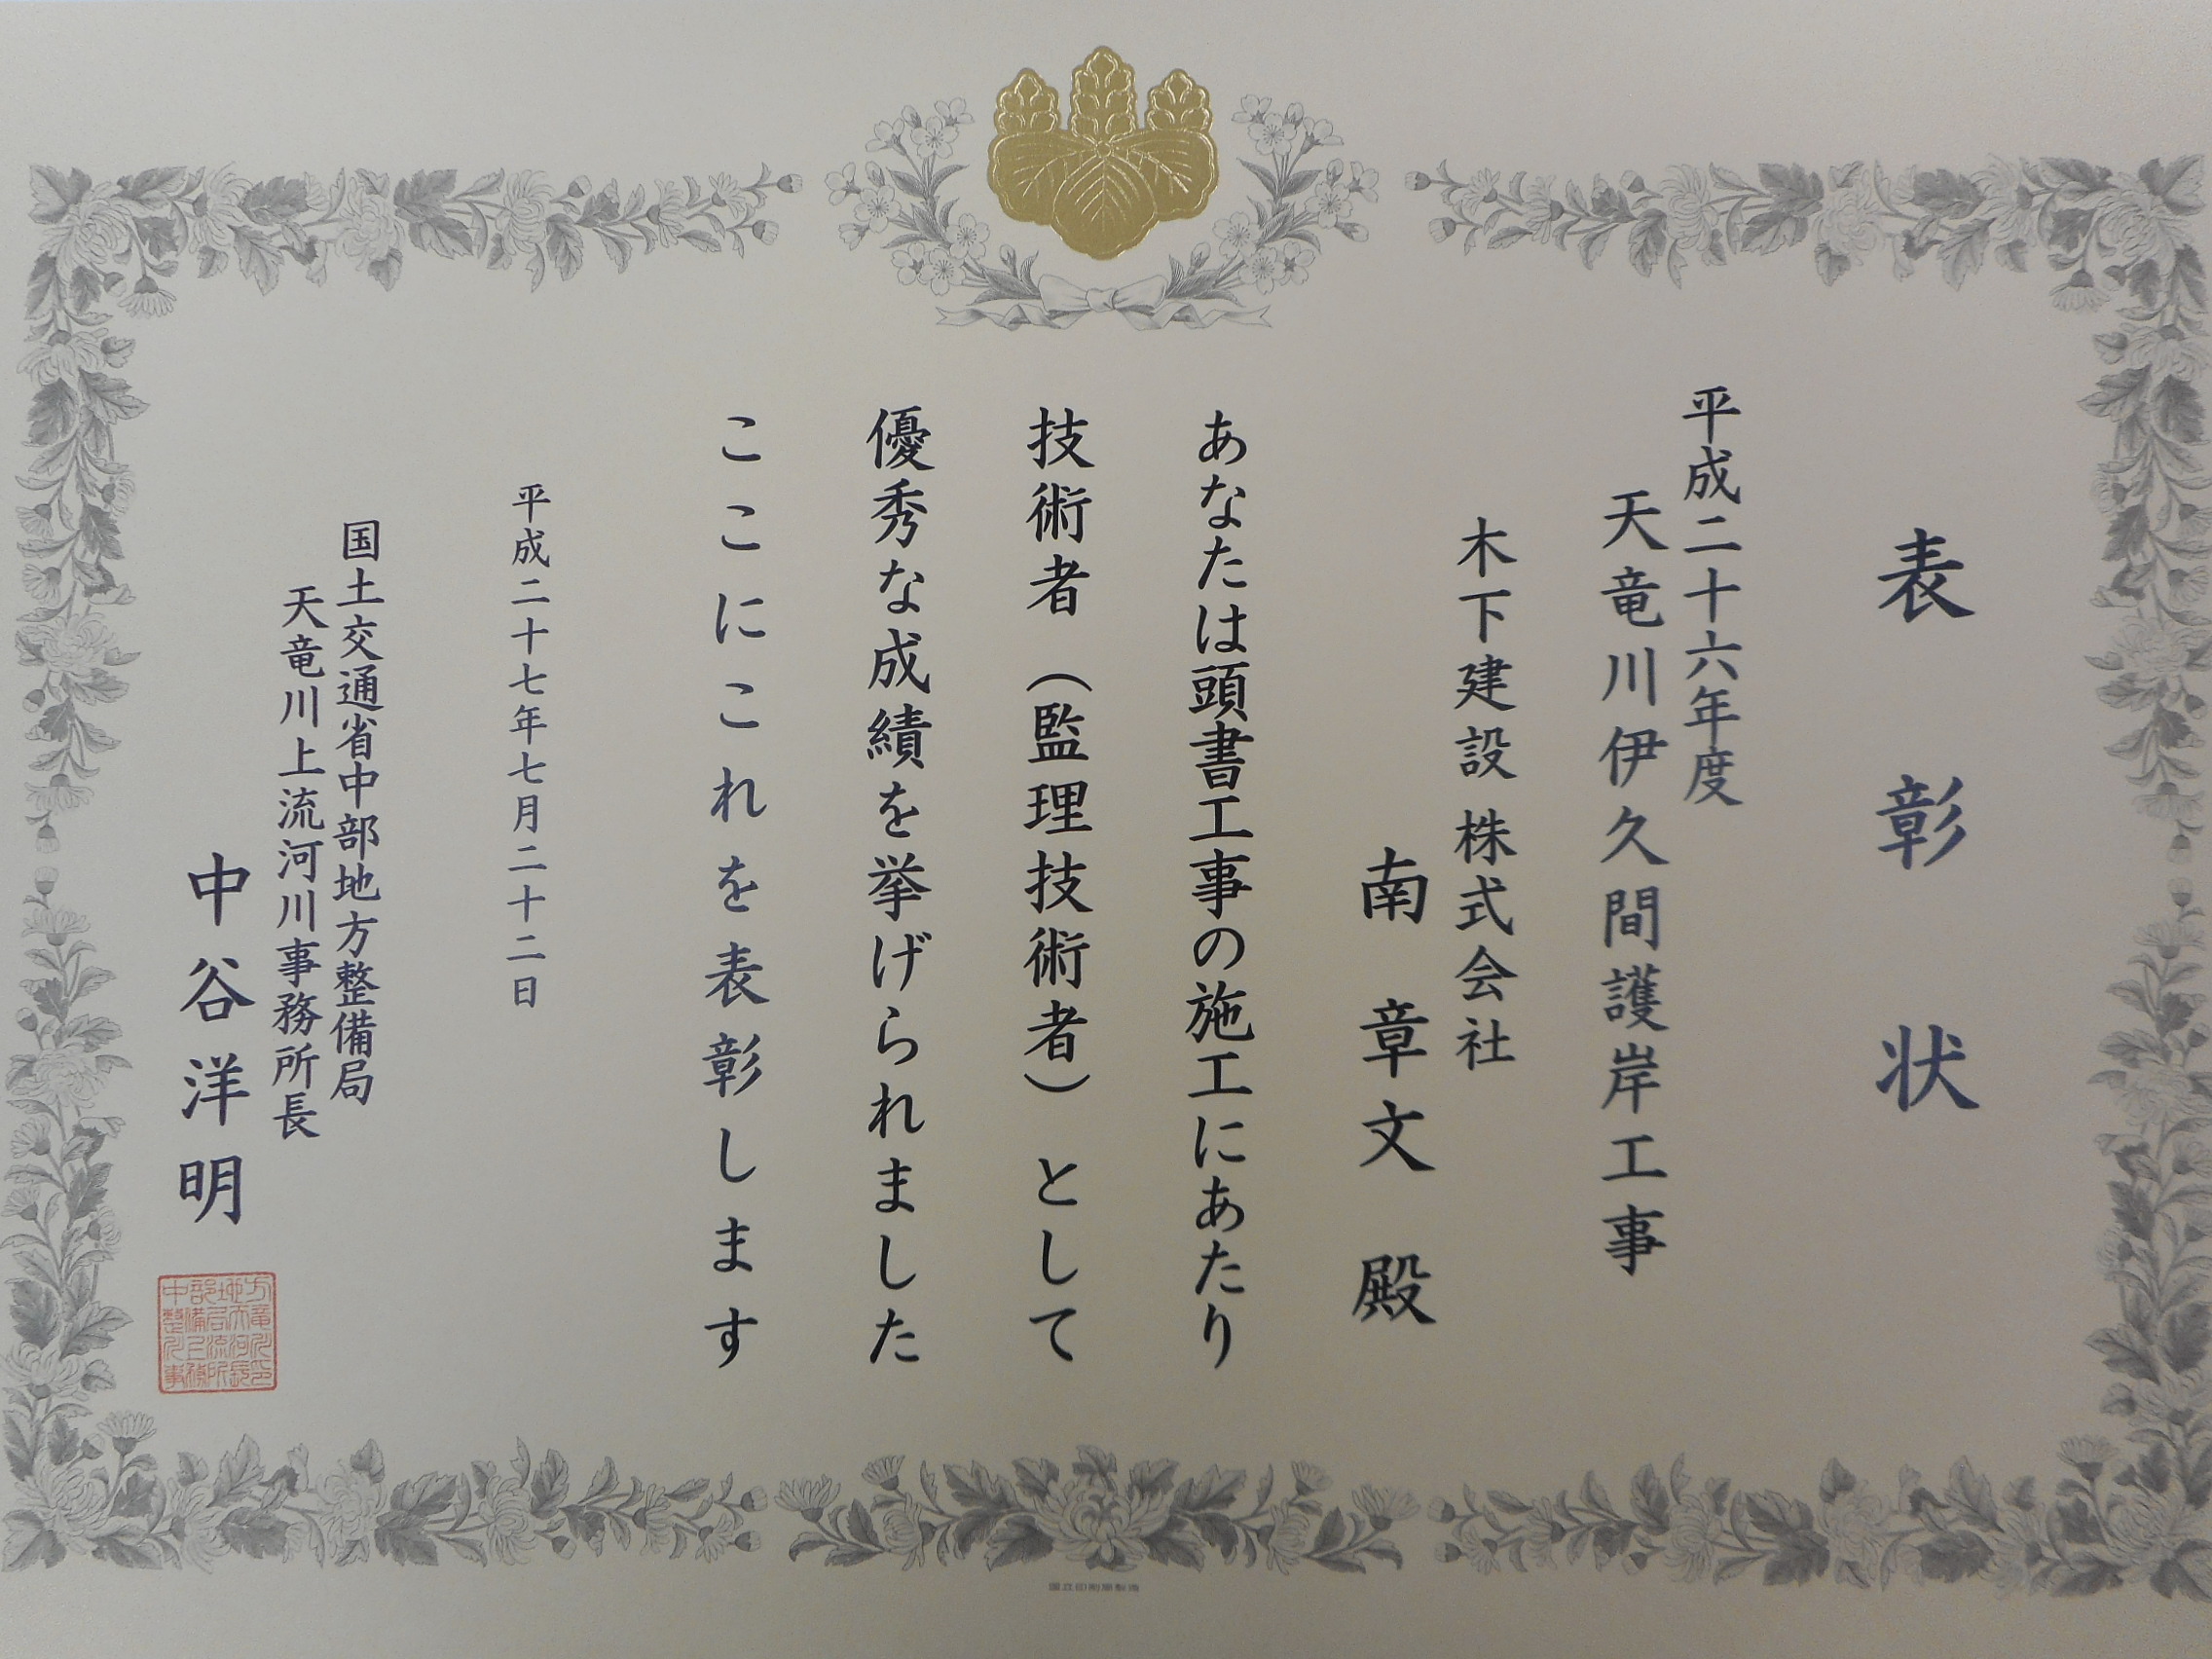 平成27年 事務所表彰『成績優秀』